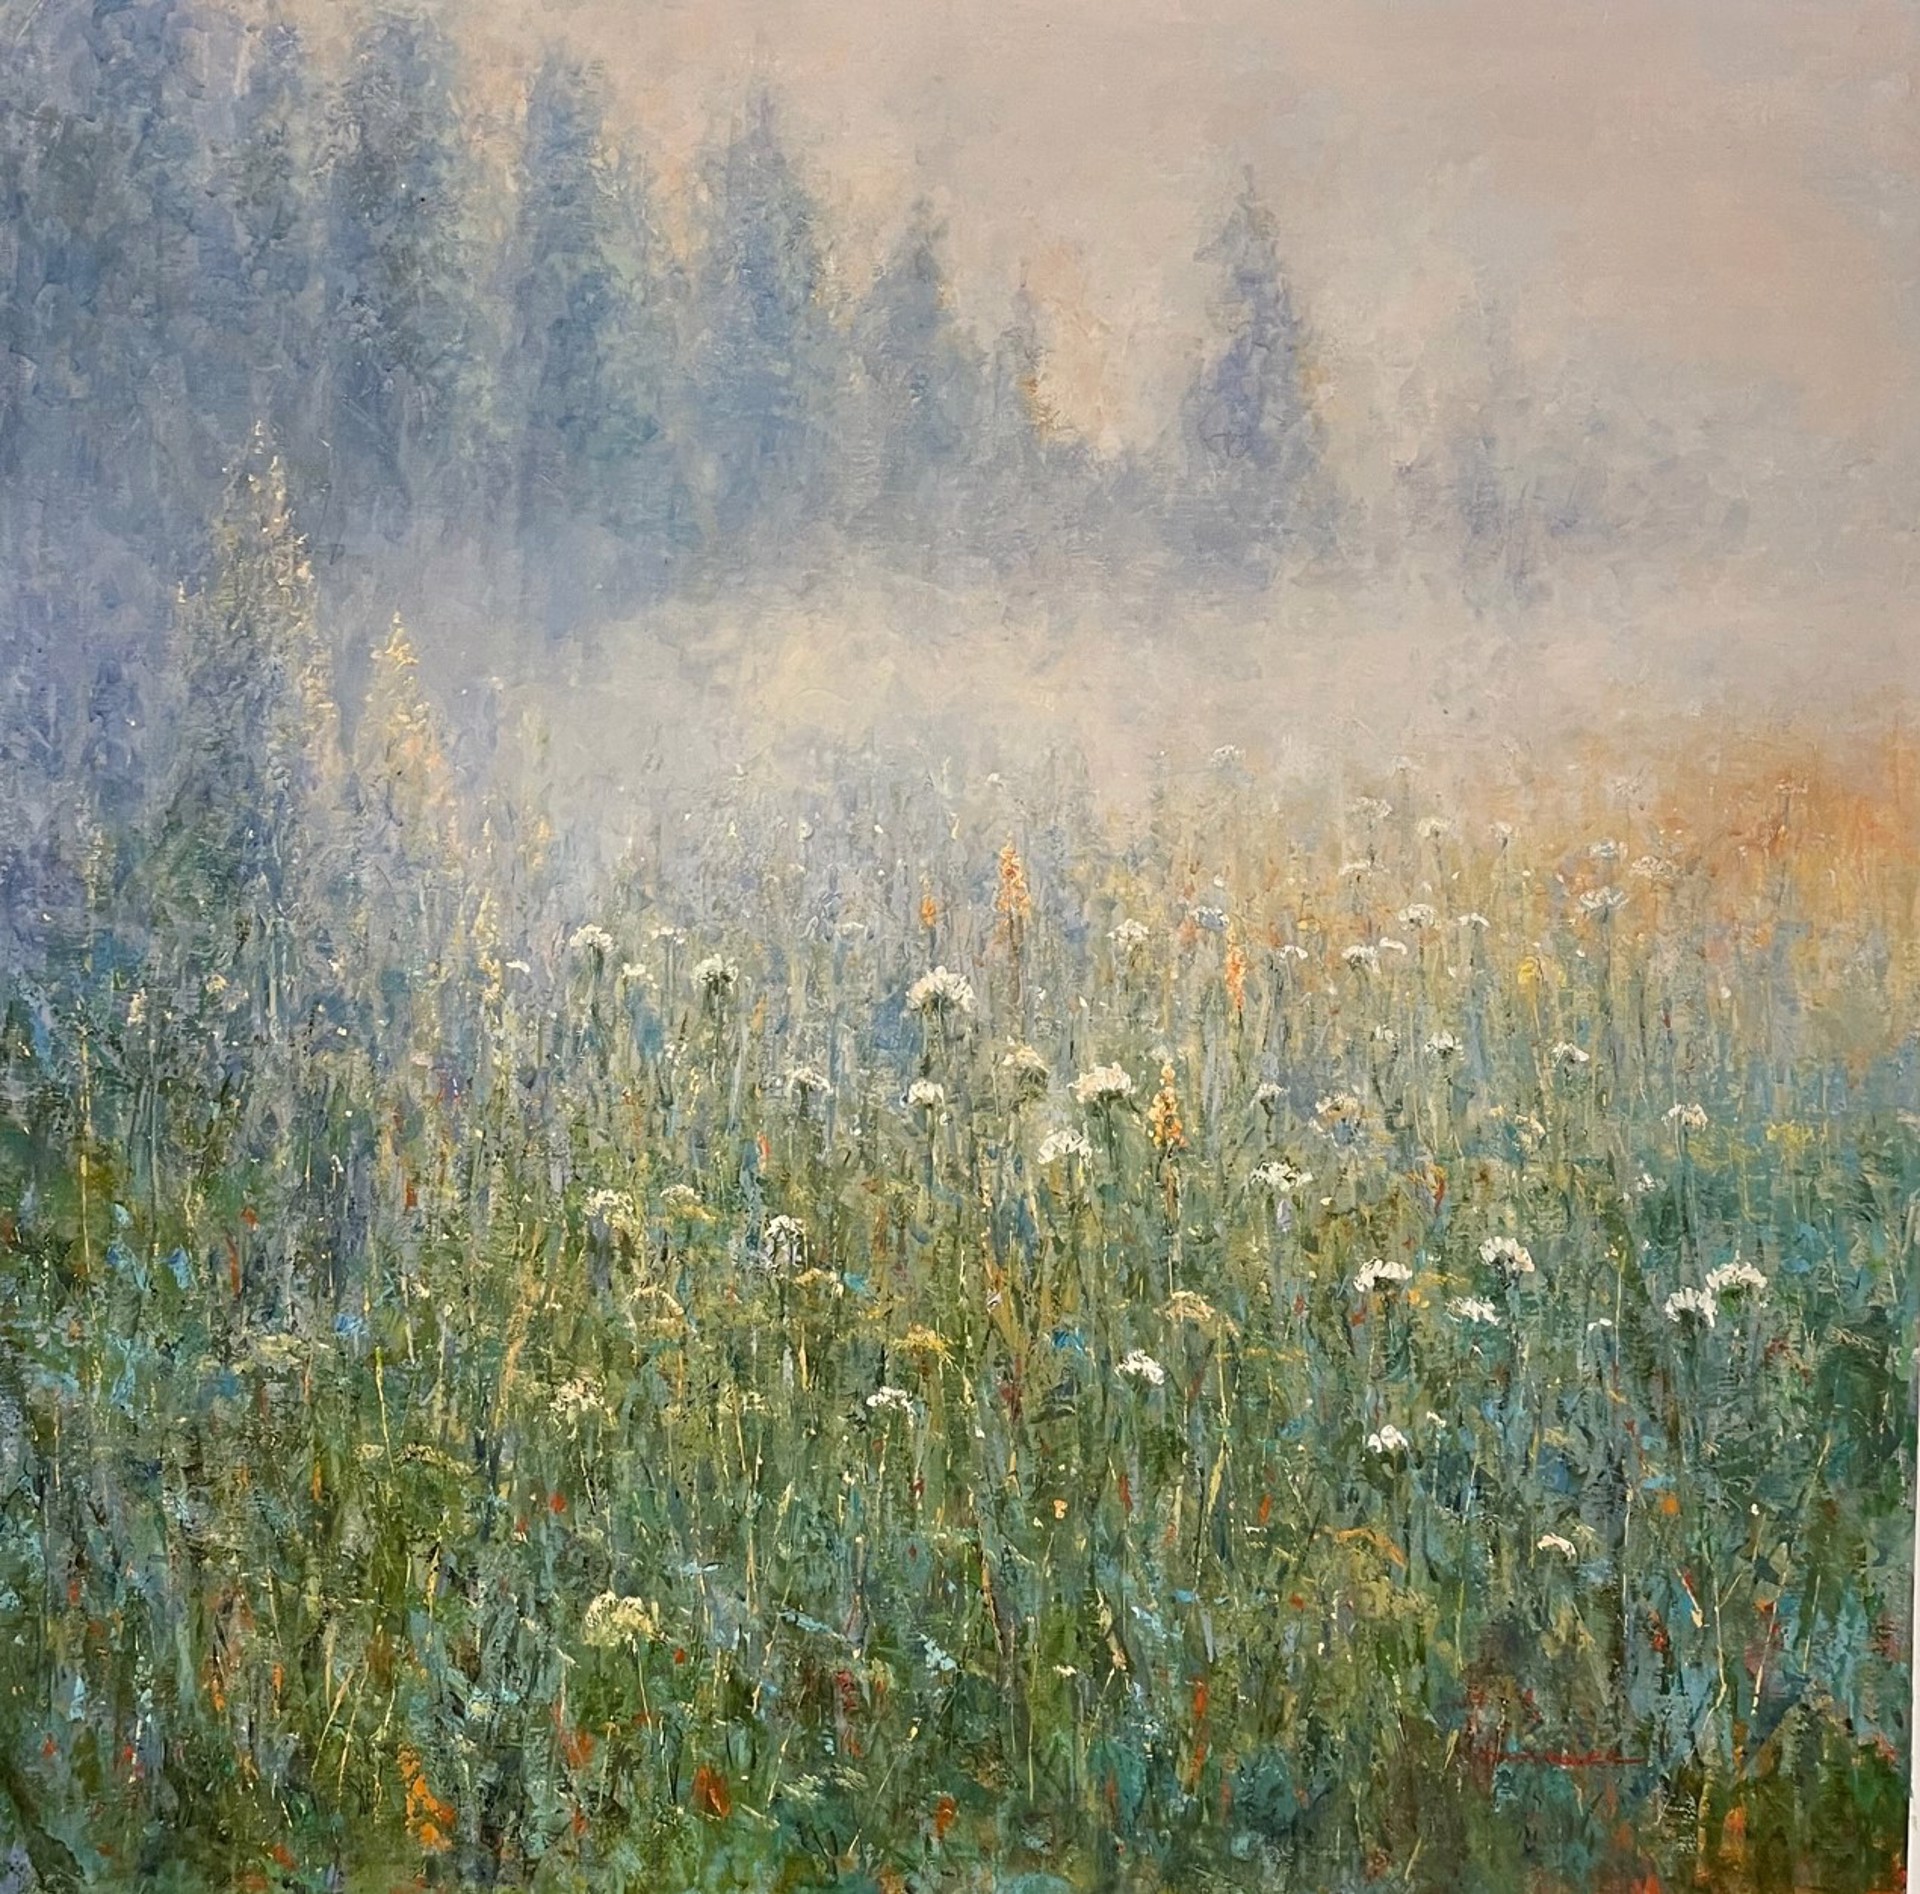 Misty Field by The Studio